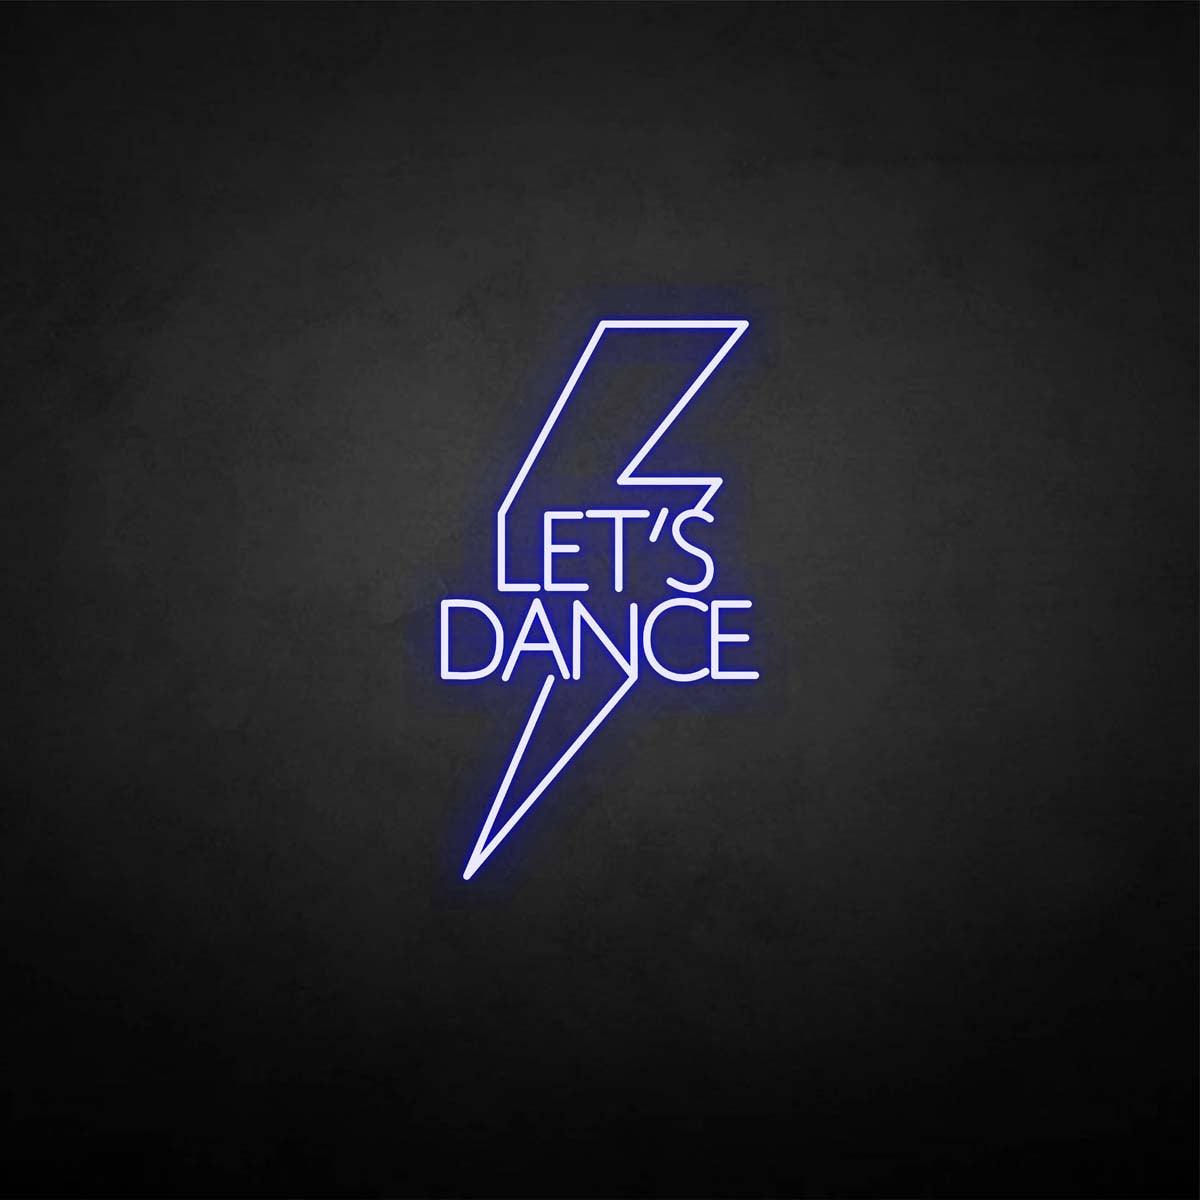 'Let's dance' neon sign